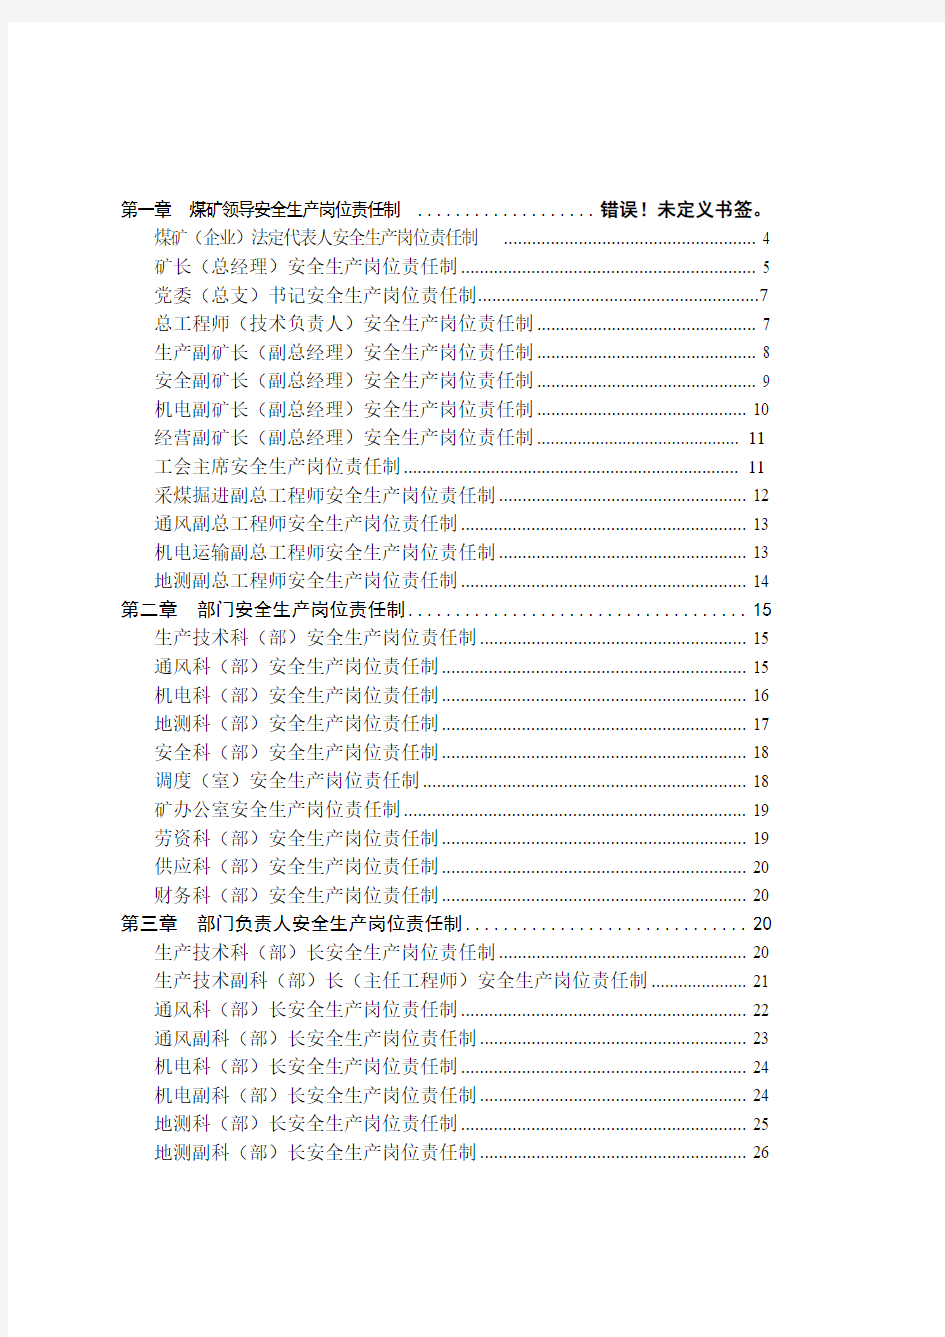 蜀河兴煤业公司安全生产岗位责任制汇编(2014书)